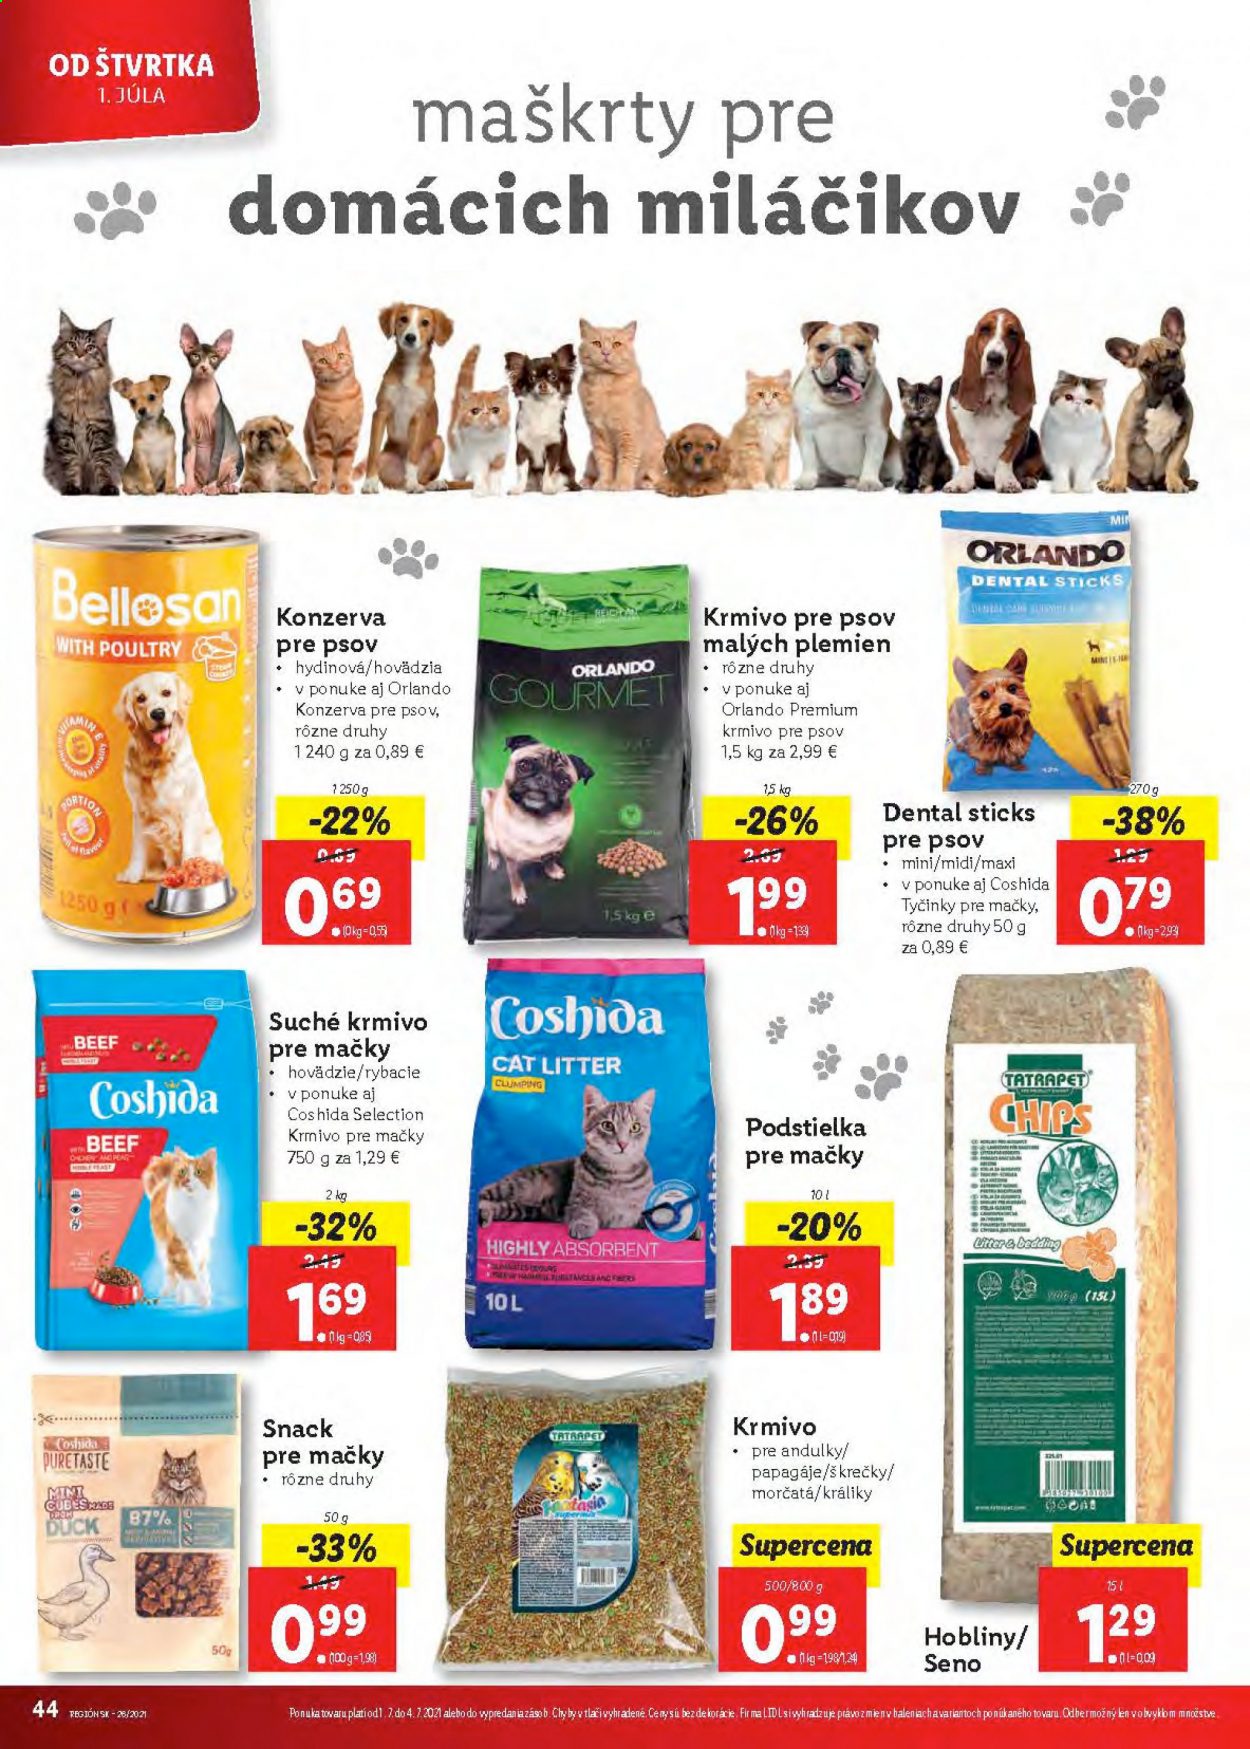 thumbnail - Leták Lidl - 28.6.2021 - 4.7.2021 - Produkty v akcii - chipsy, Duck, Coshida, podstielka, konzerva pre psov, krmivo pre psov, pochúťka pre mačky, krmivo pre mačky, maškrta, Gourmet, LG. Strana 45.